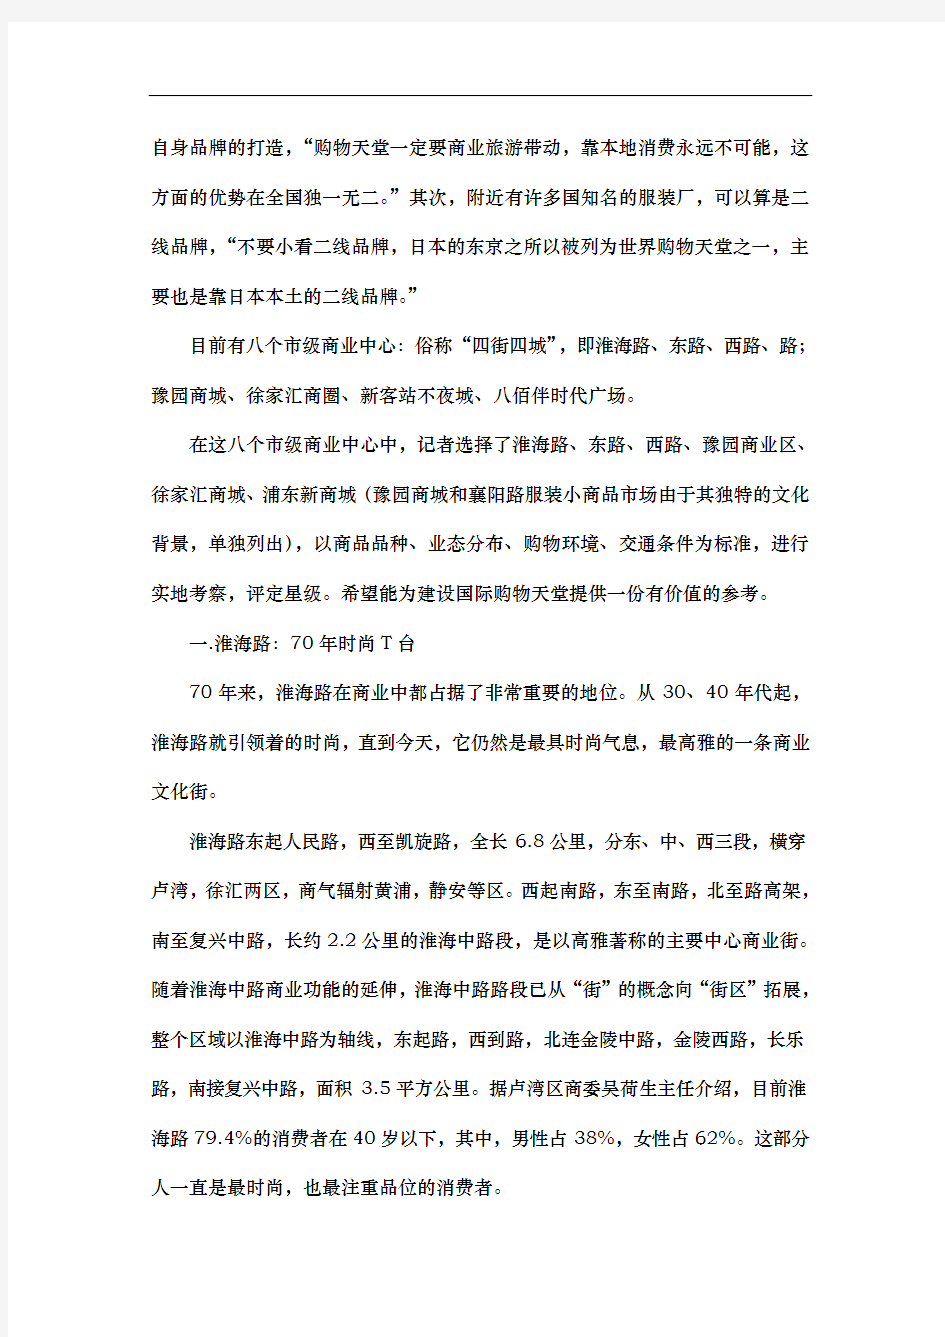 上海七大商业中心的考察分析报告